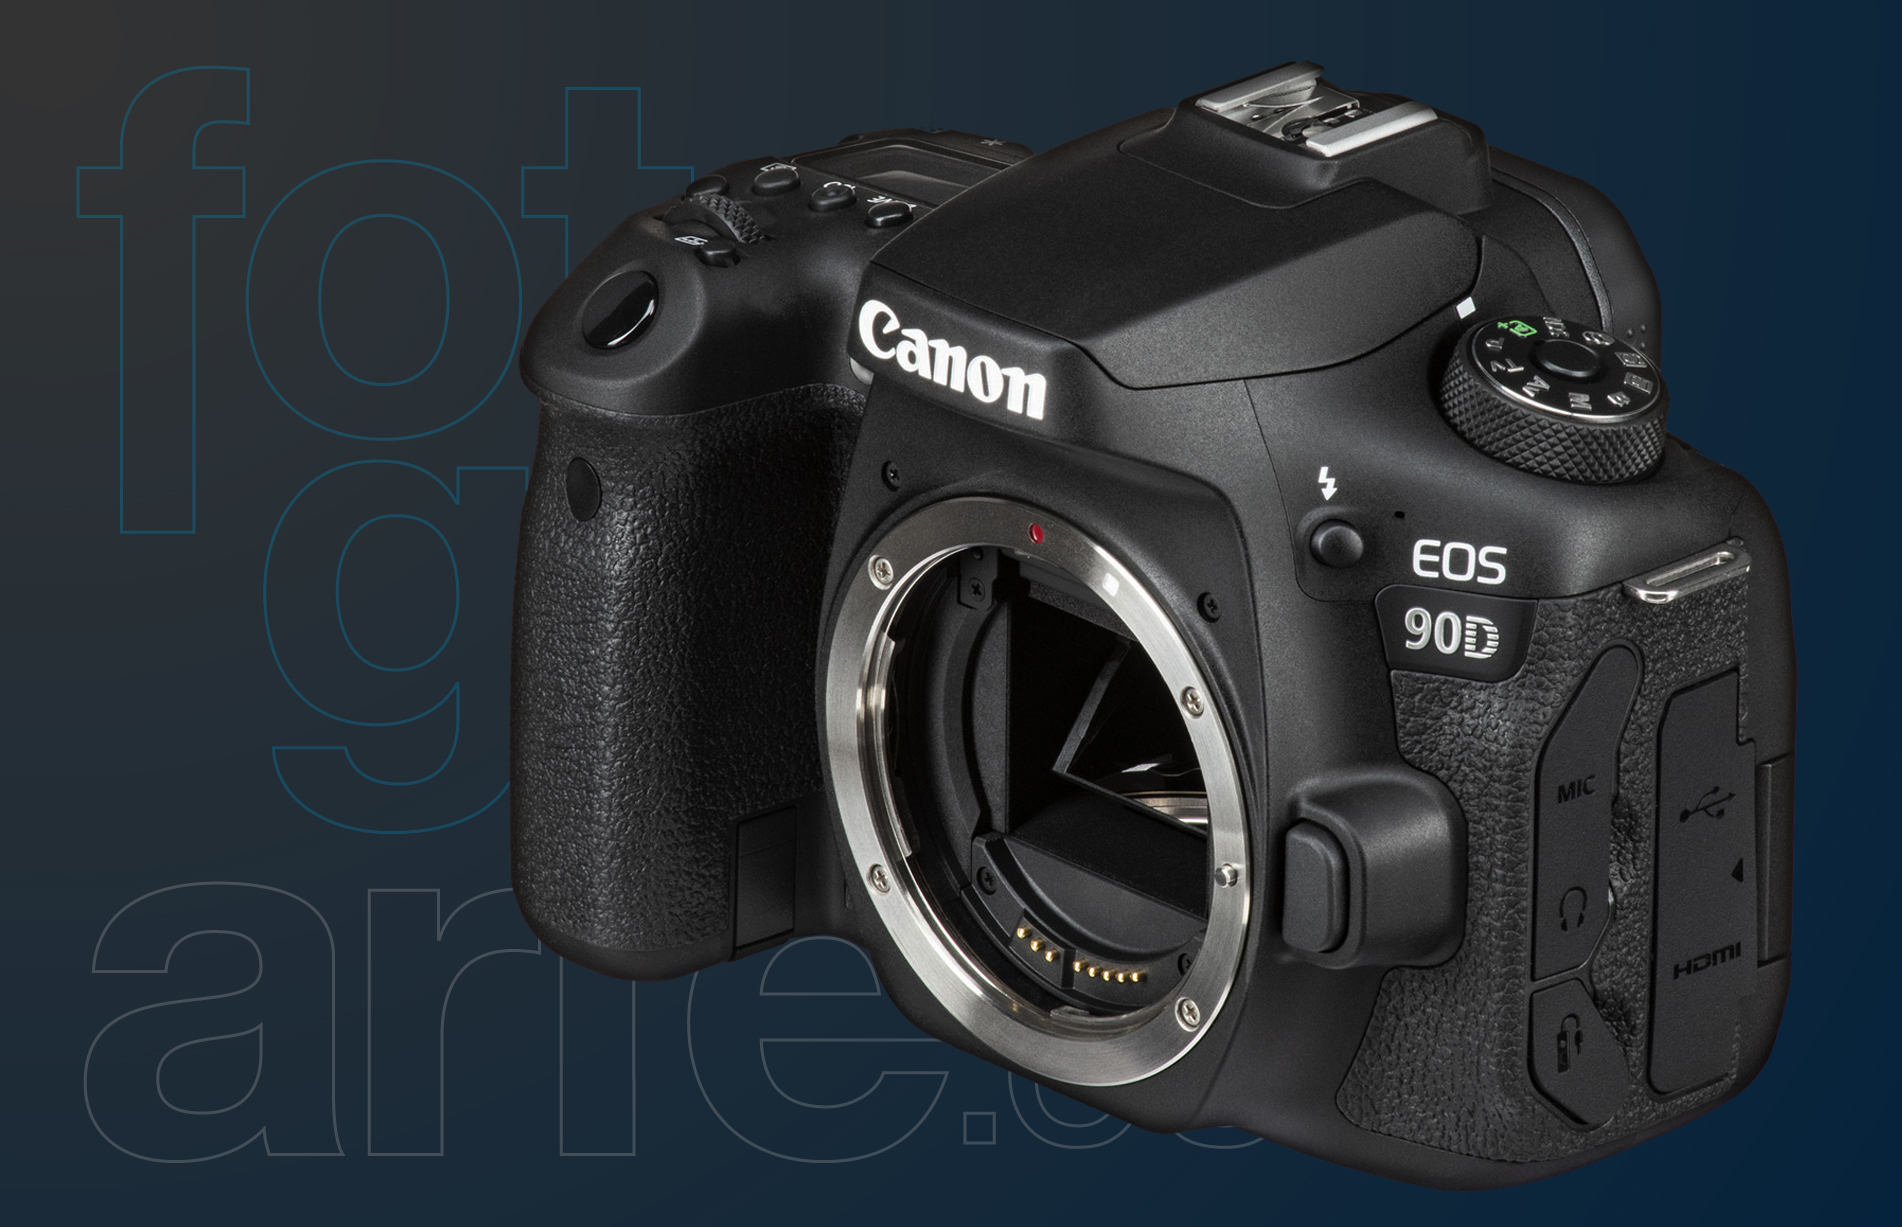 Plata Dime ella es Canon EOS 90D : Una gran cámara fotográfica formato APS-C con notable  potencia, versatilidad y excelente calidad de imagen - El Blog de  Fotografia de Fotografiarte